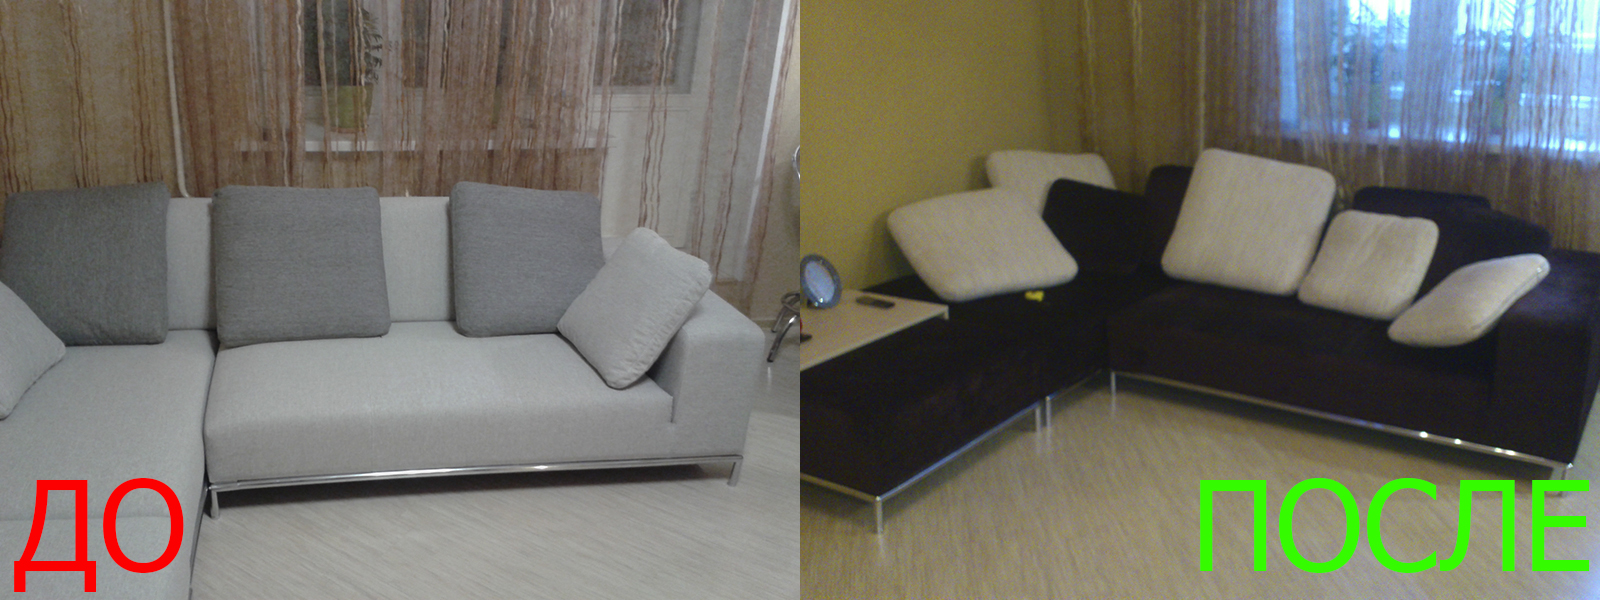 Обшивка углового дивана в Евпатории разумные цены на услуги, опытные специалисты